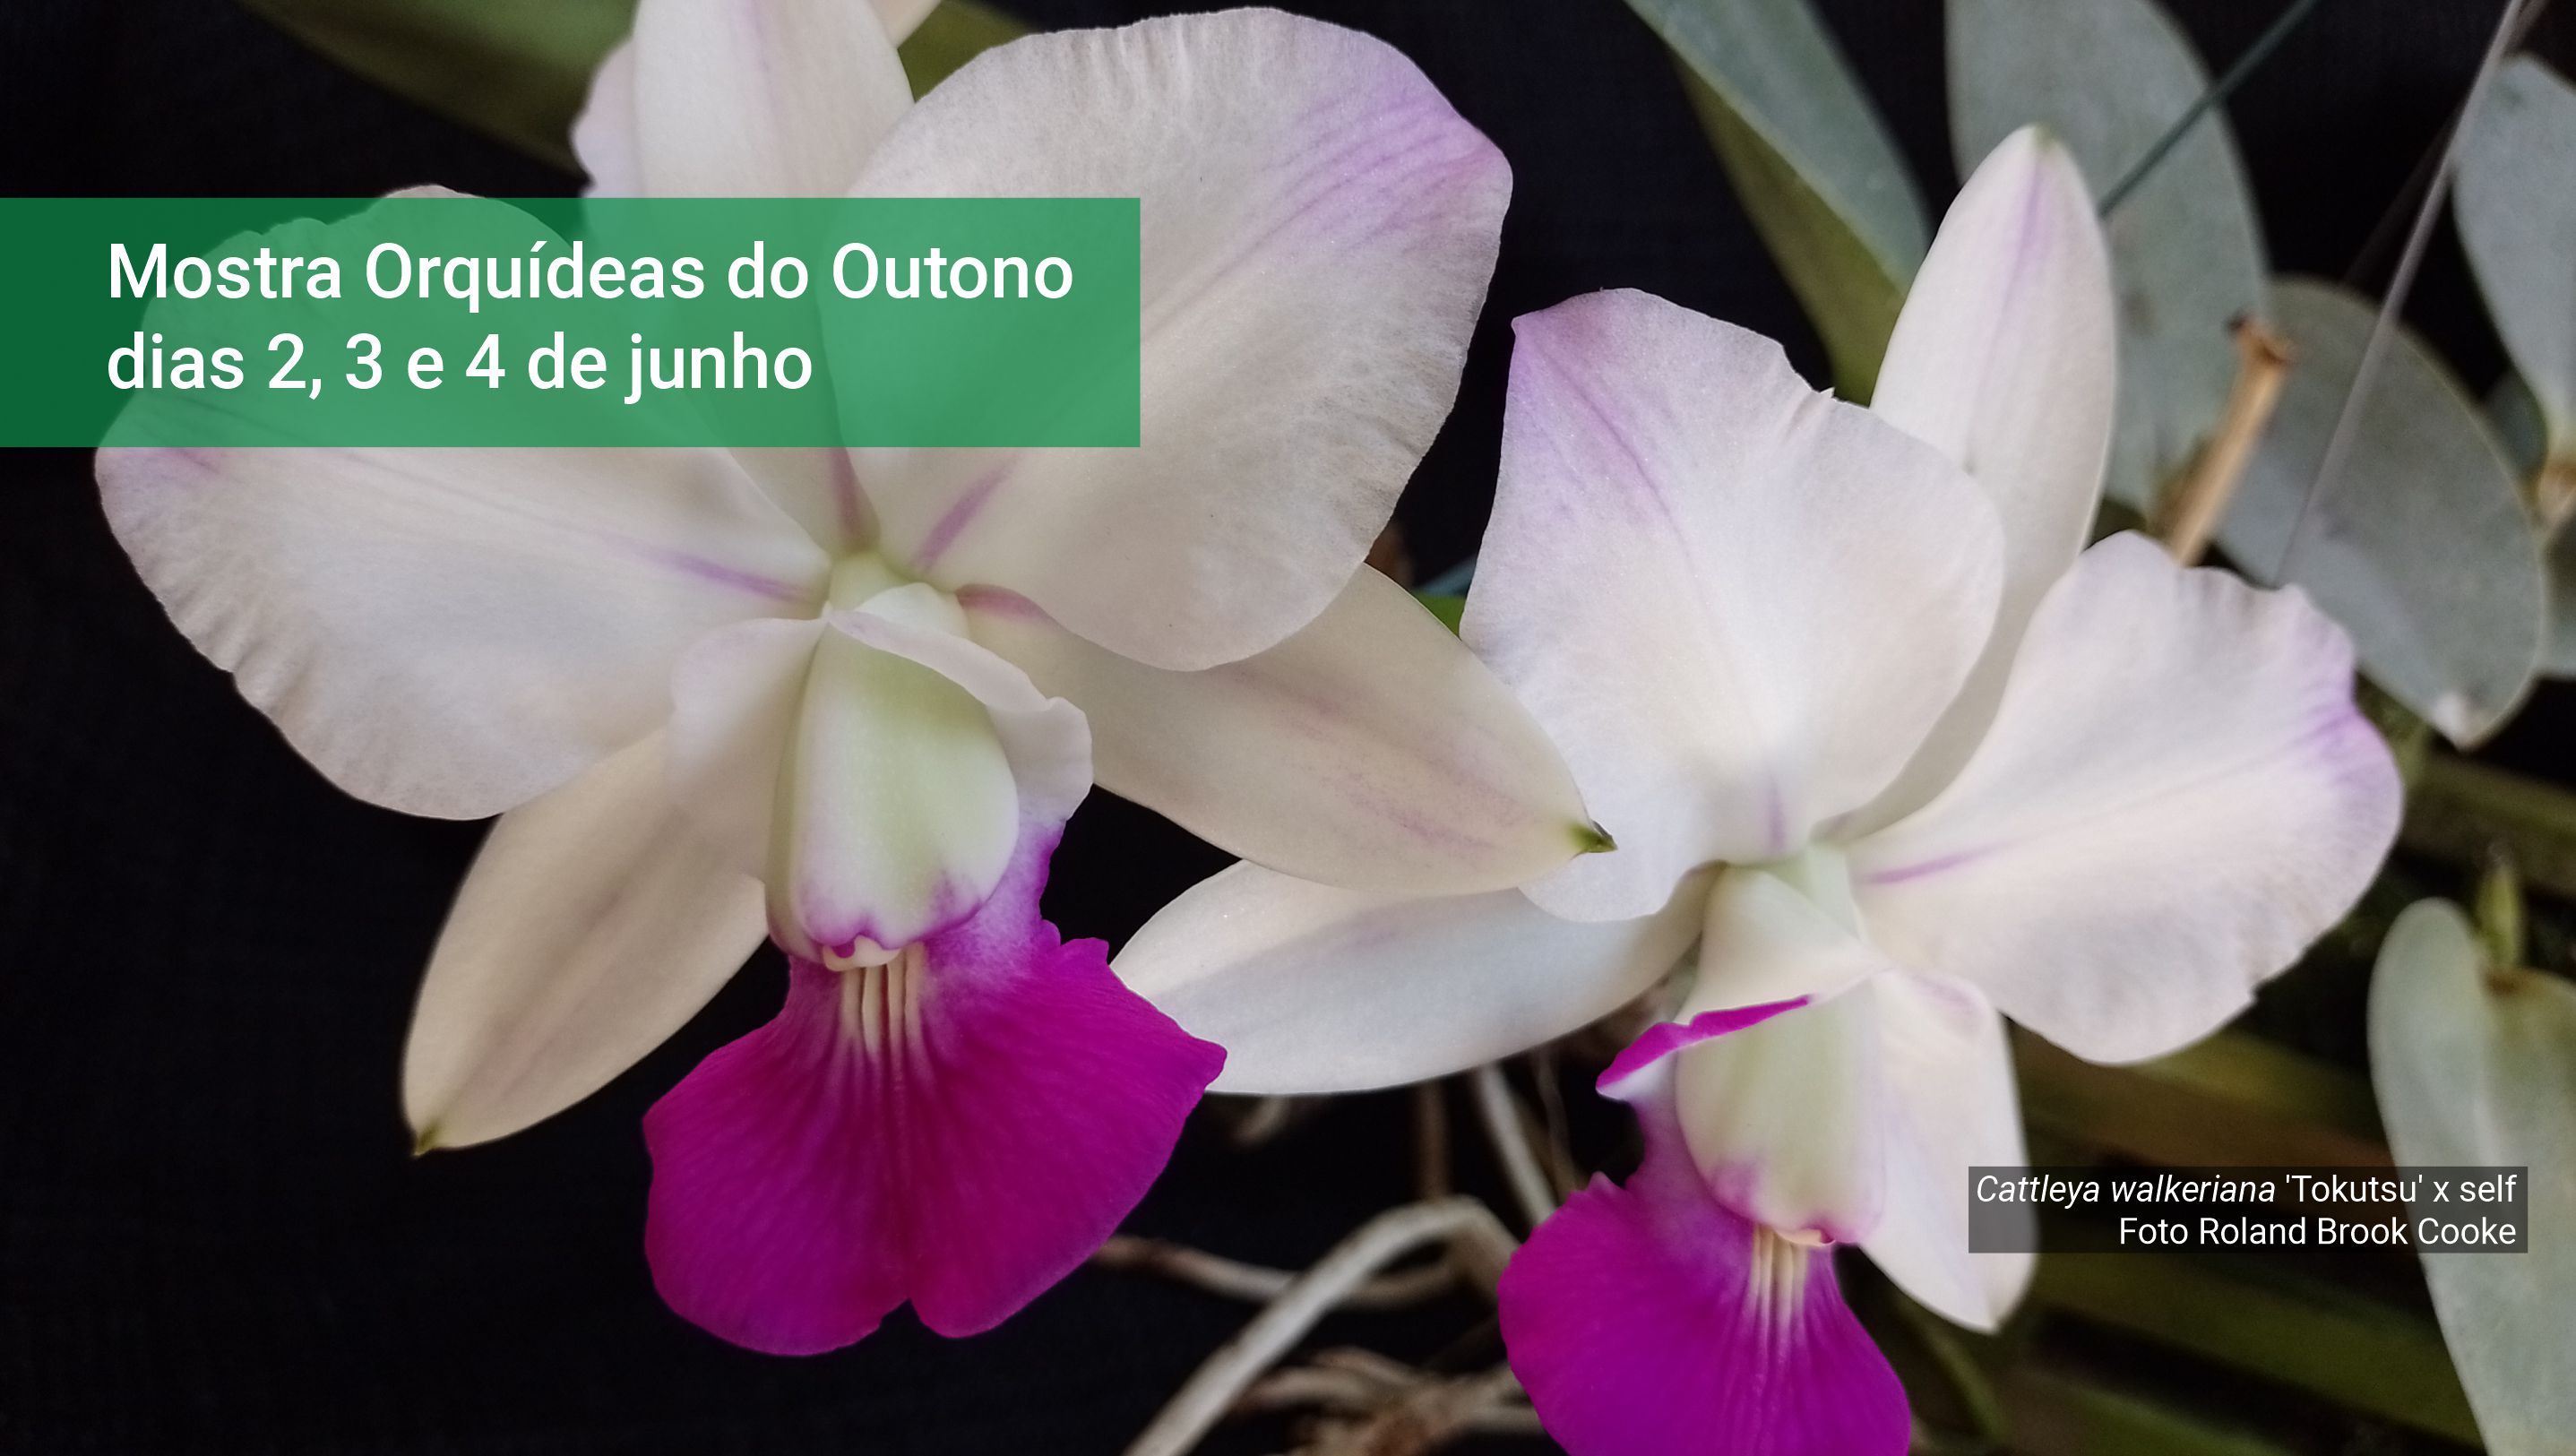 Jardim Botânico do Rio promove a Mostra Orquídeas do Outono